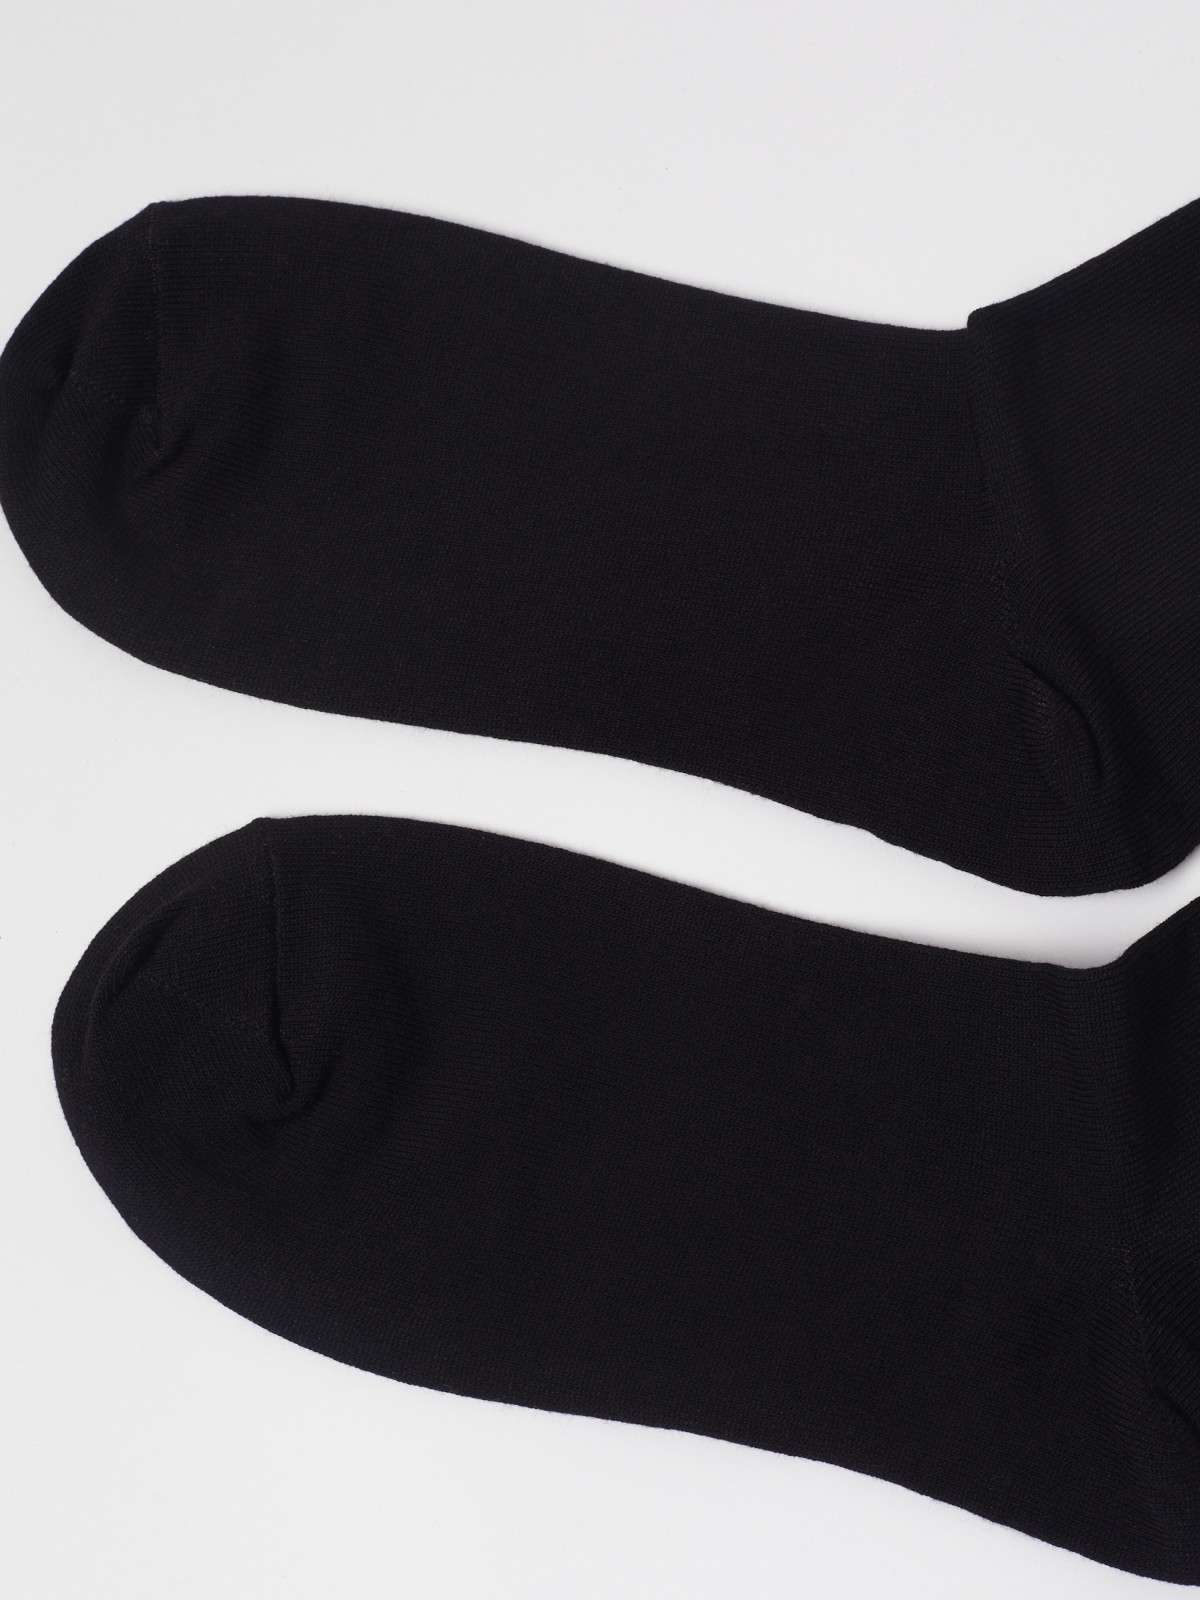 Набор высоких носков (3 пары в комплекте) zolla 01311995G015, цвет черный, размер 25-27 - фото 4